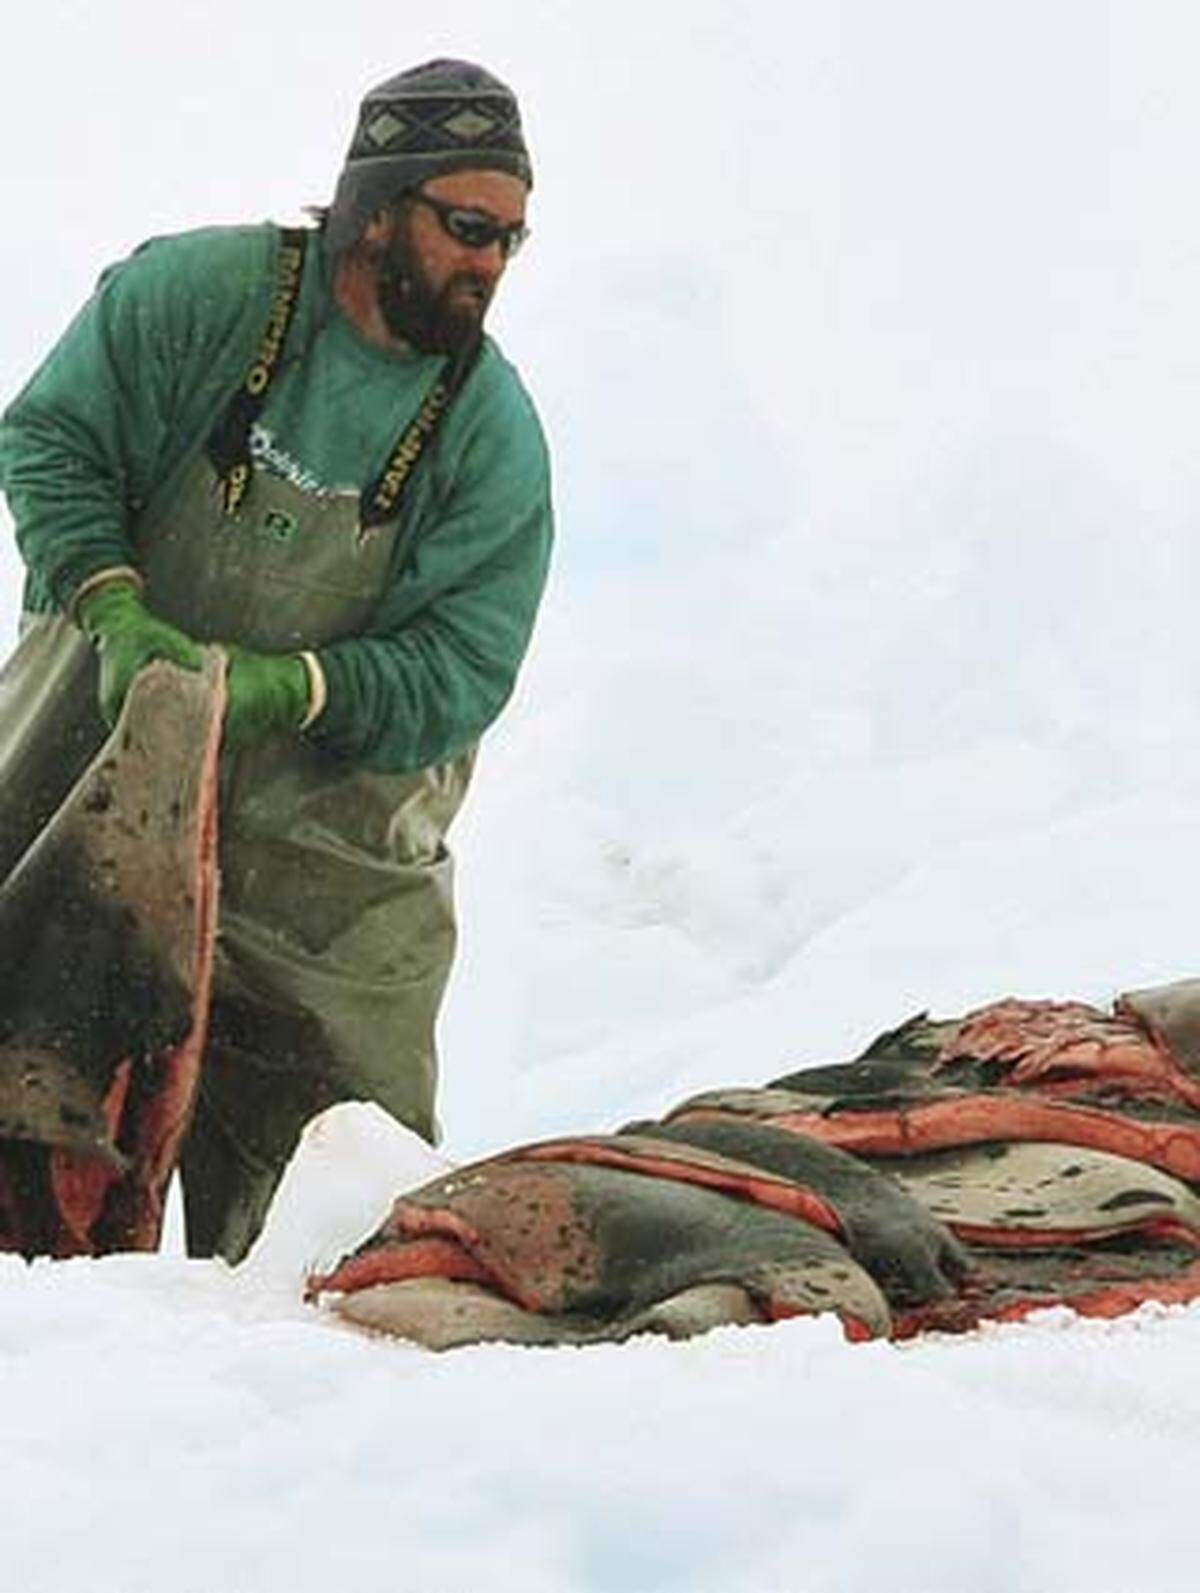 Die Regierung sagt hingegen, dass die Fangquote nach Beratungen mit Experten festgelegt wurde, "um sicherzustellen, dass der Robbenbestand erhalten bleibt".